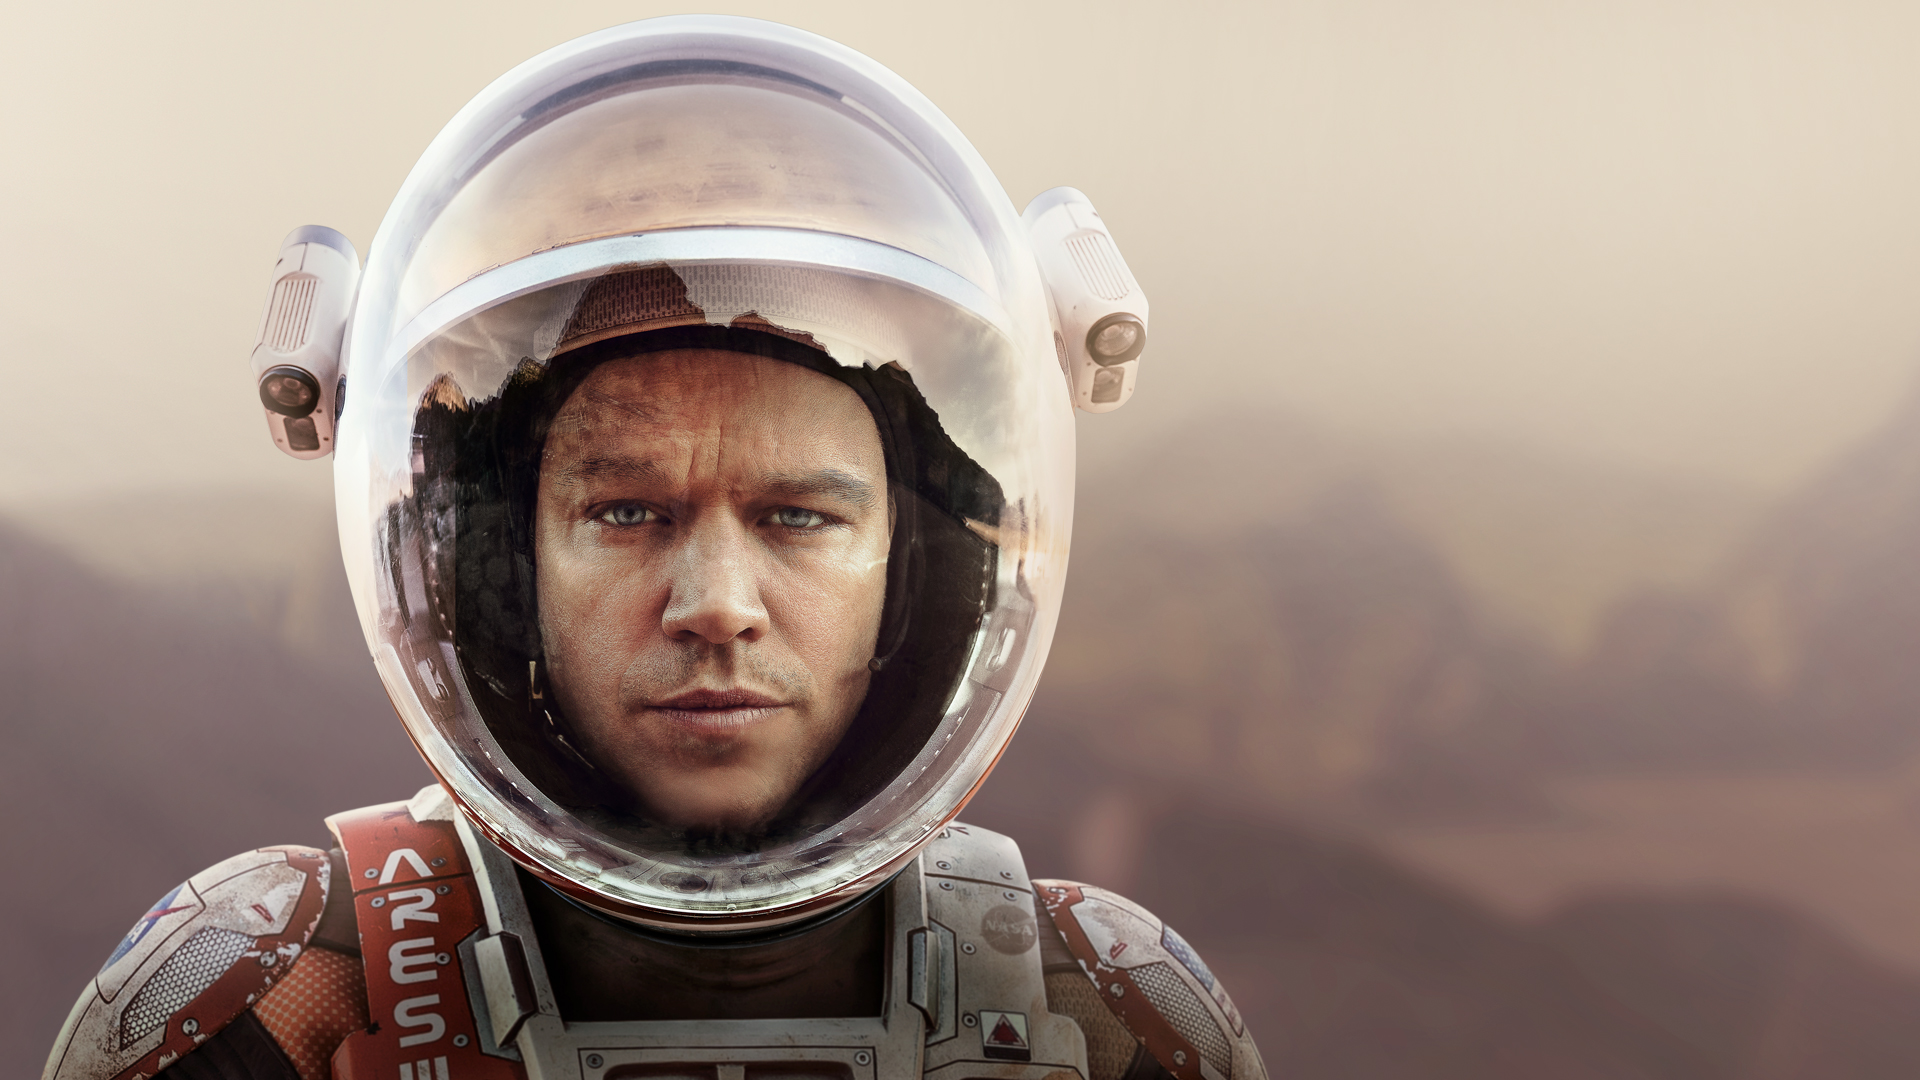 Matt Damon as astronaut Mark Watney left behind on Mars in The Martian (2015)